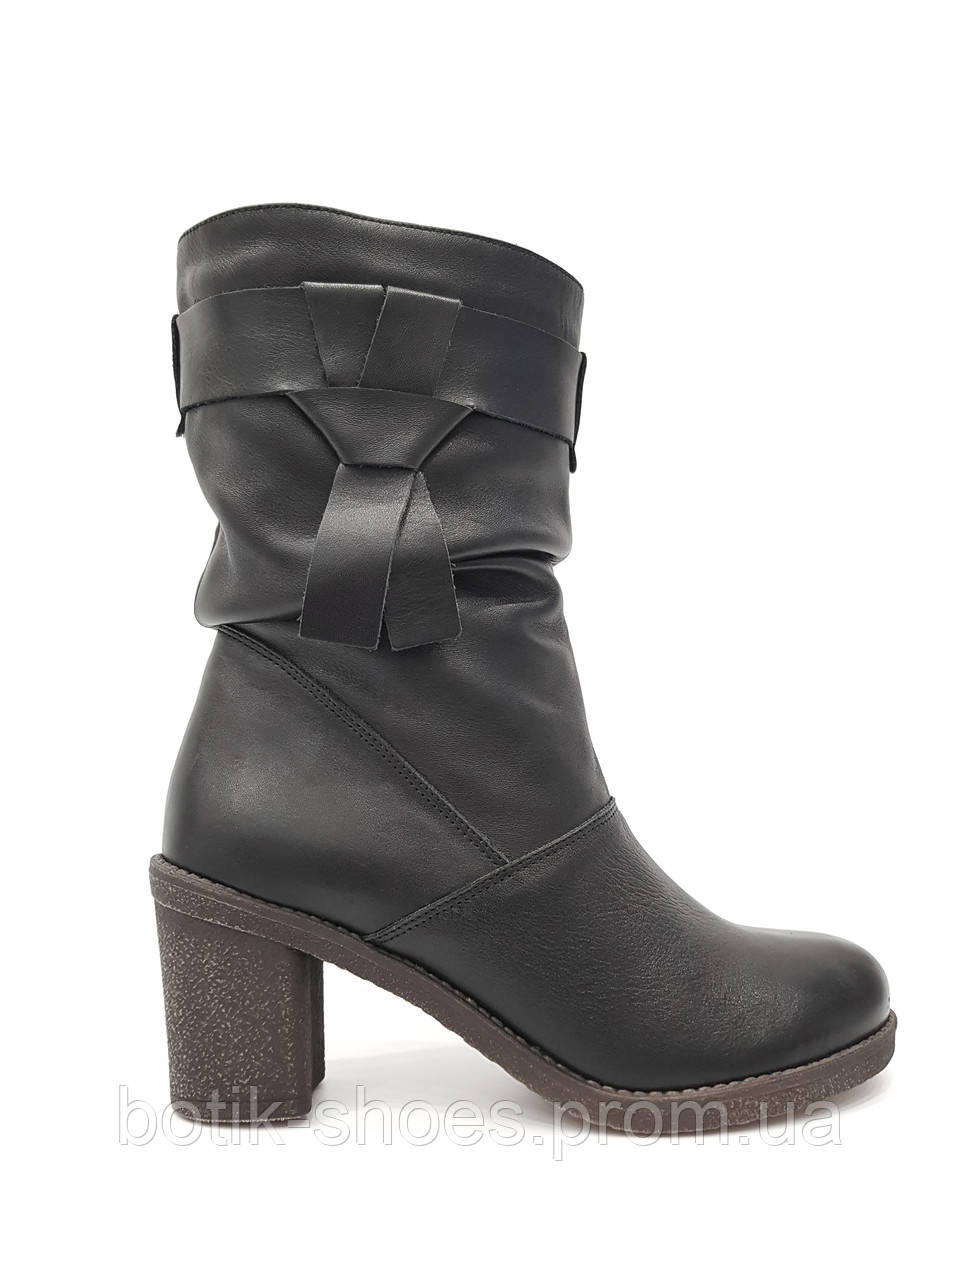 Модні зимові жіночі шкіряні чоботи з хутром на високому каблуці чоботи короткі теплі якісні польща 40 розмі Kordel 4308 чорні 2023